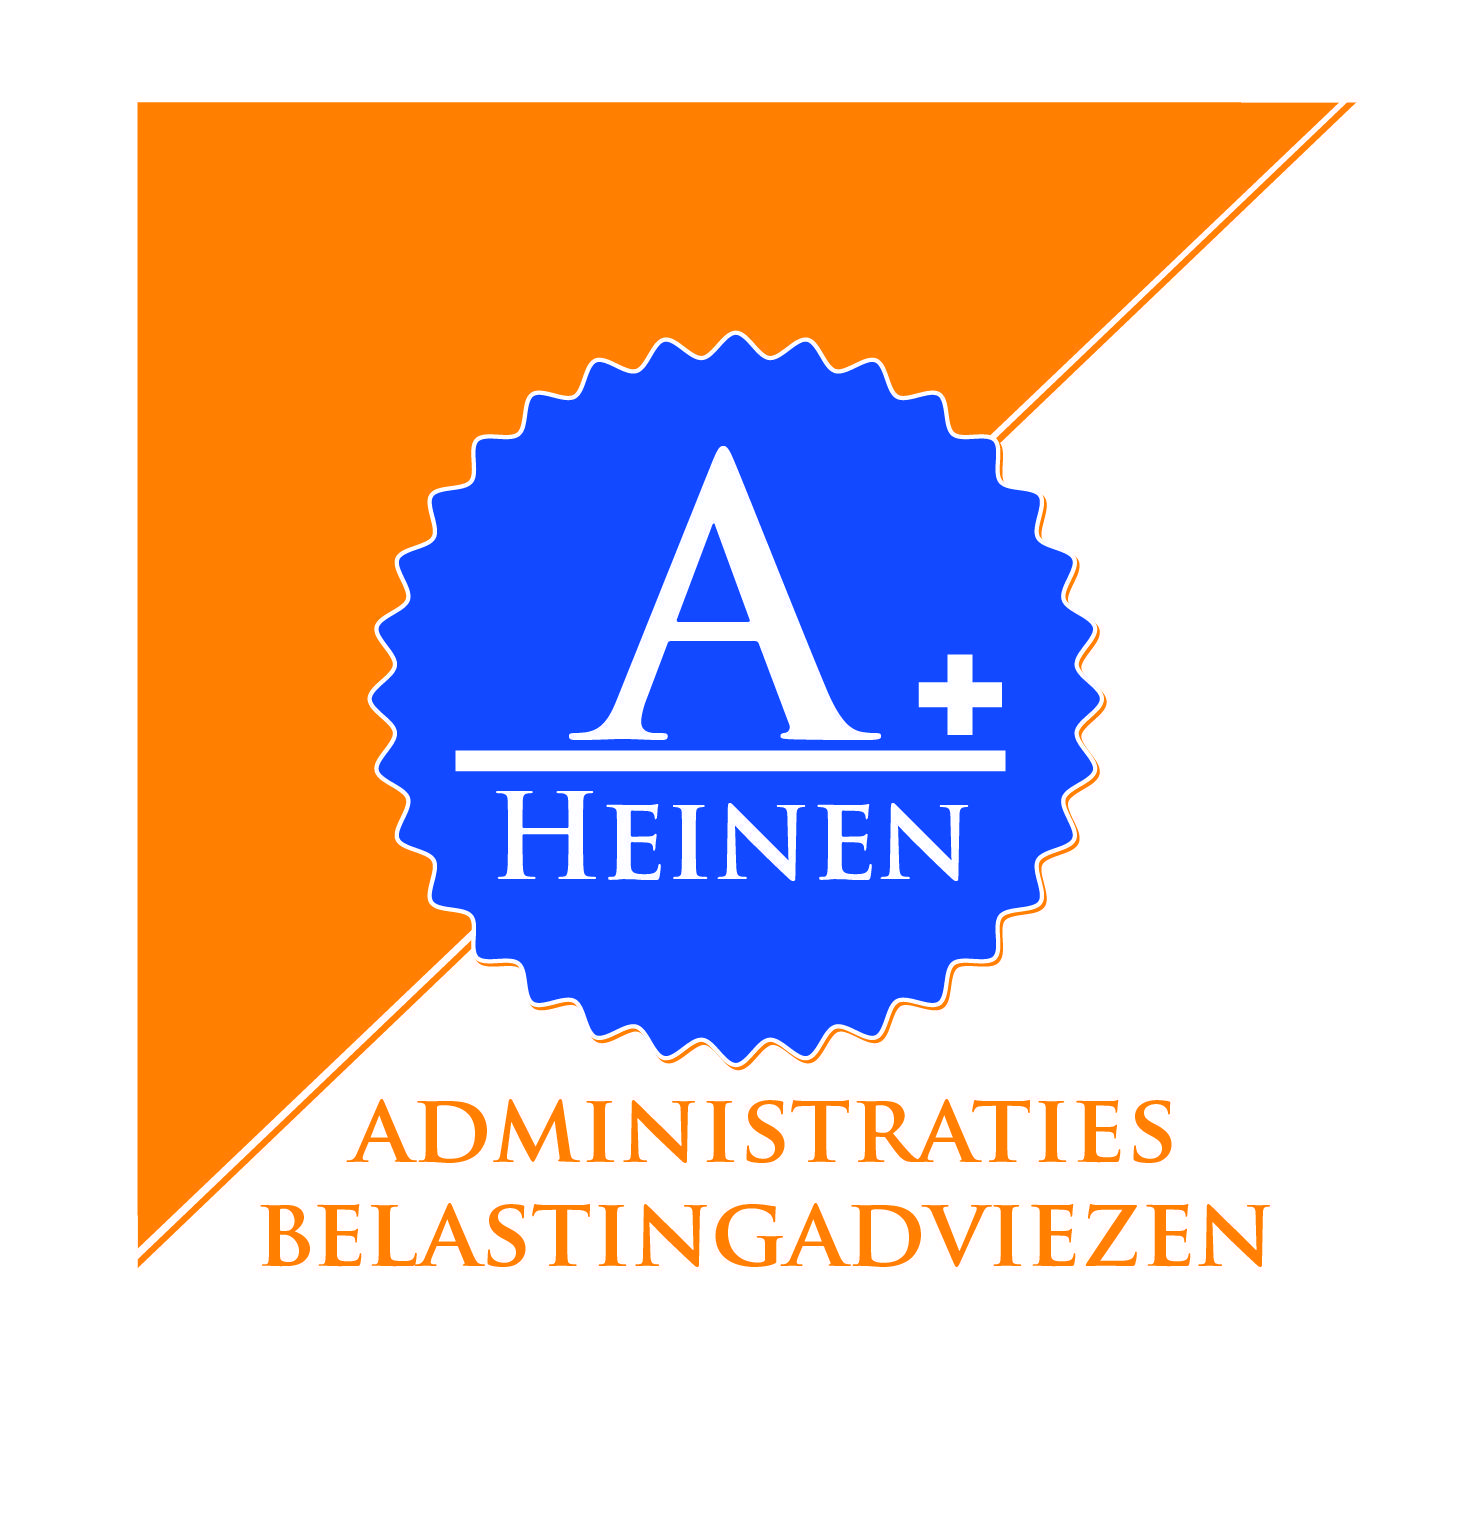 Heinen Administraties